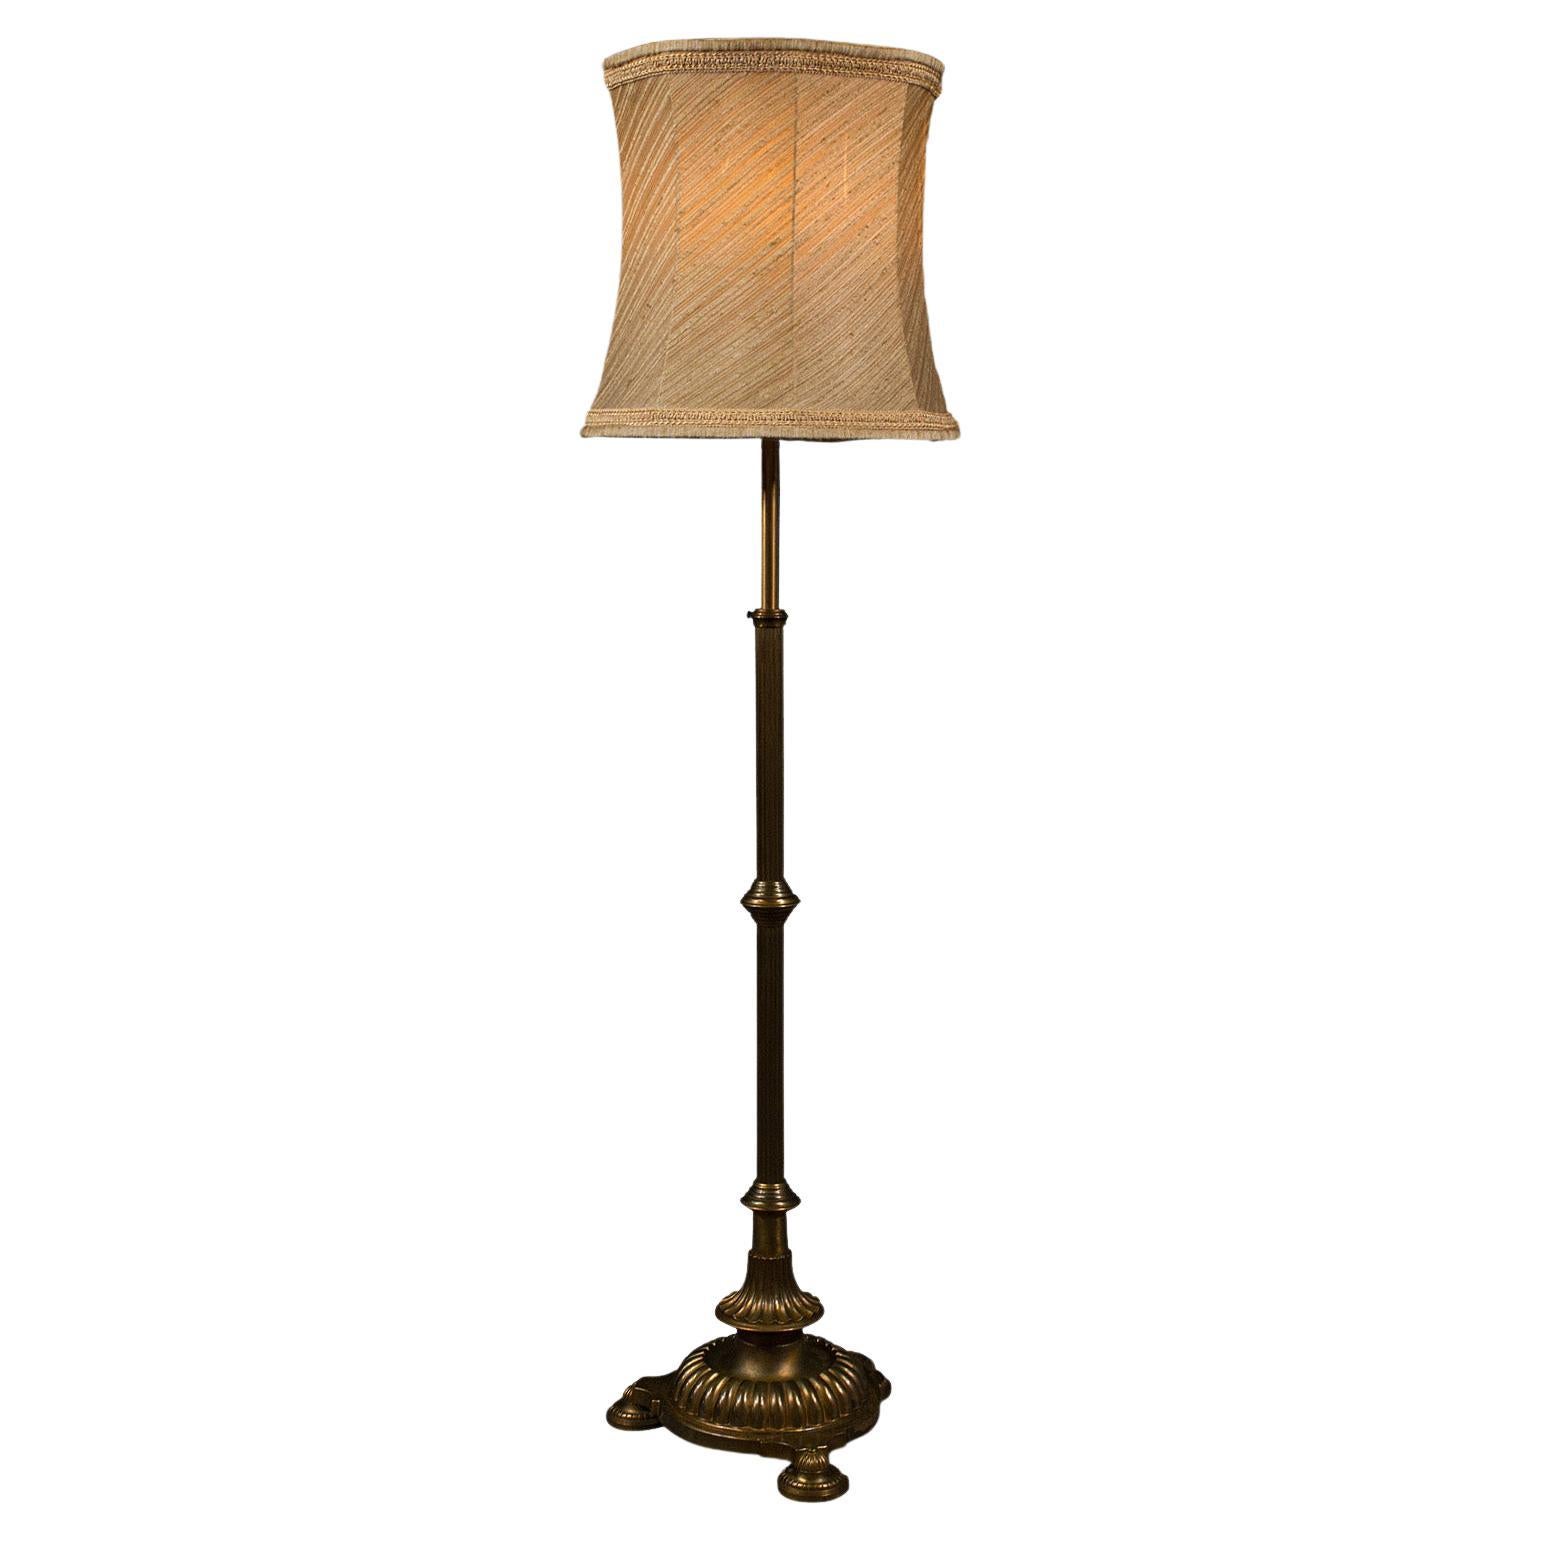 Vintage Standard Lamp, English, Brass, Adjustable Reading Light, 1940 For Sale